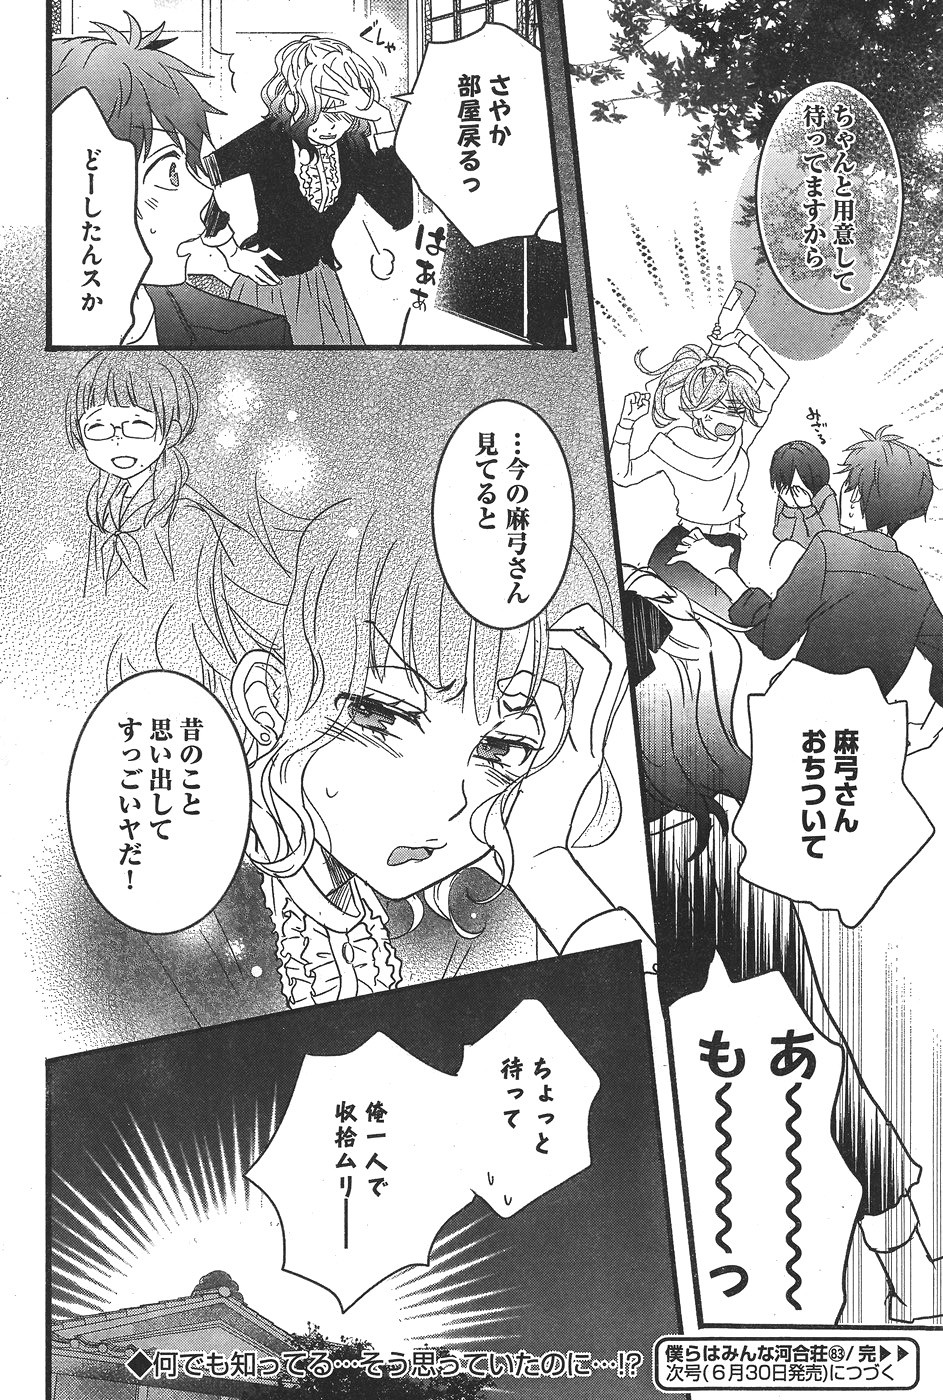 Bokura wa Minna Kawaisou - Chapter 83 - Page 24